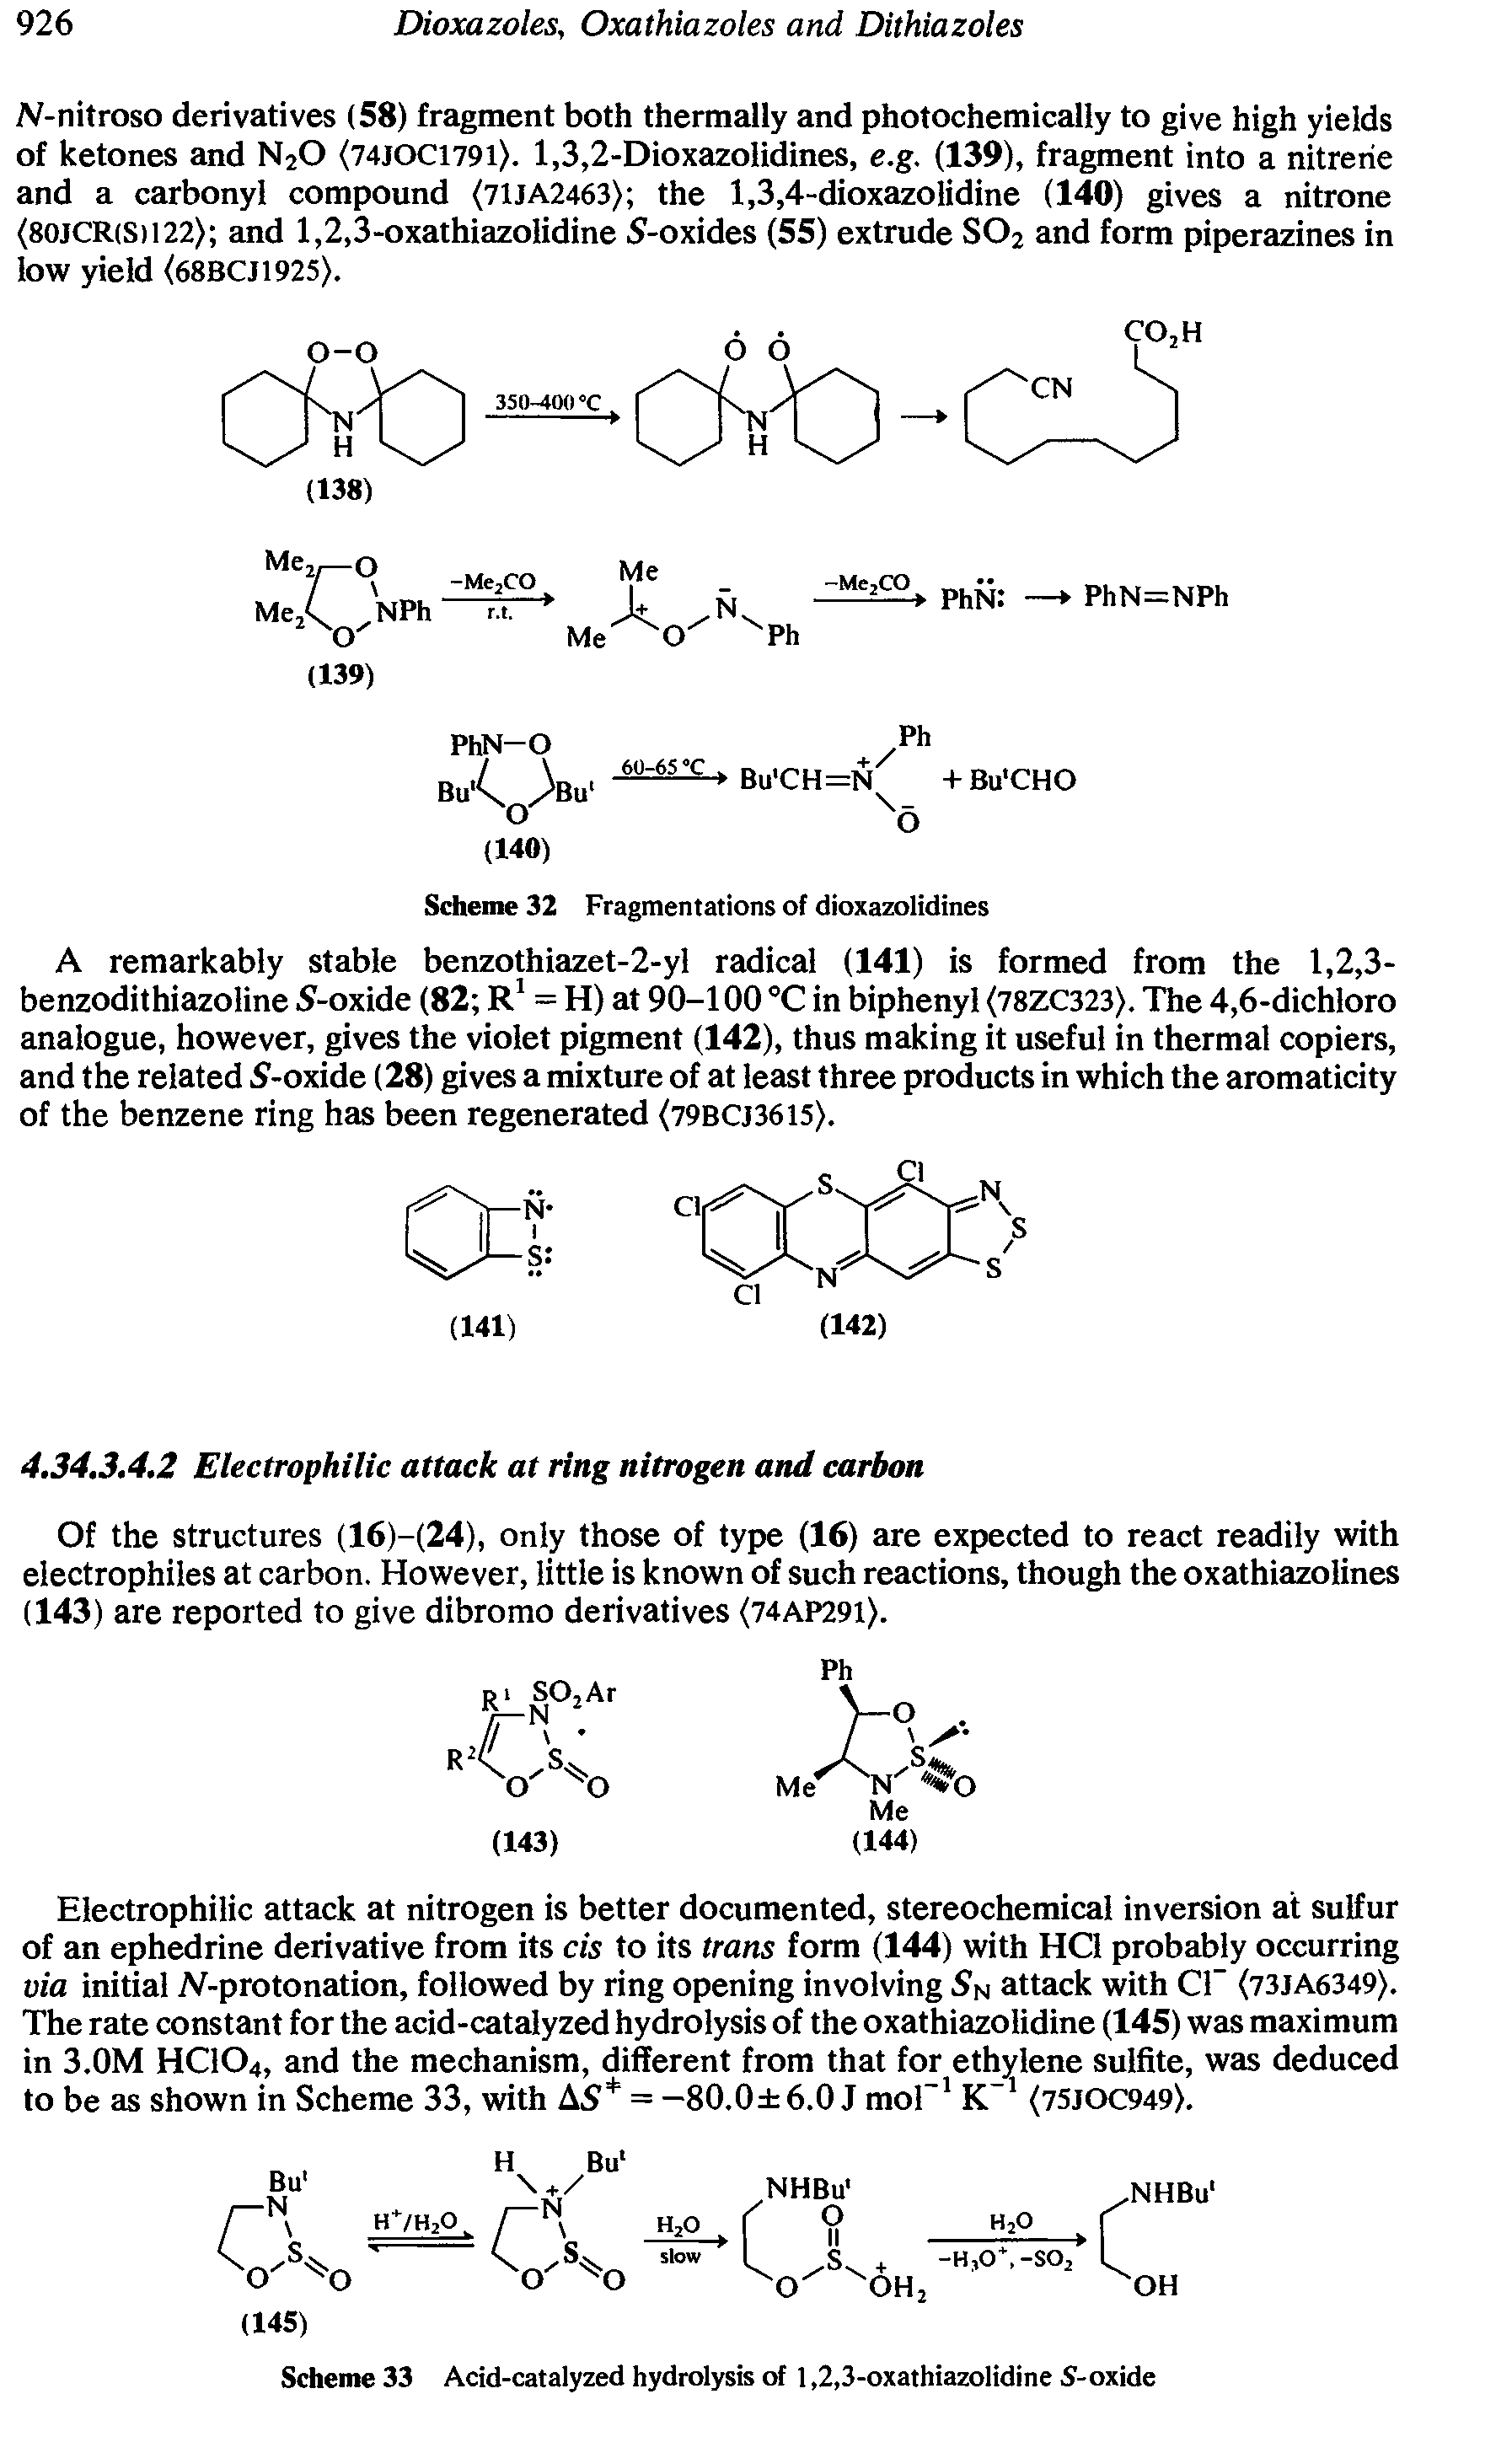 Scheme 33 Acid-catalyzed hydrolysis of 1,2,3-oxathiazolidine S-oxide...